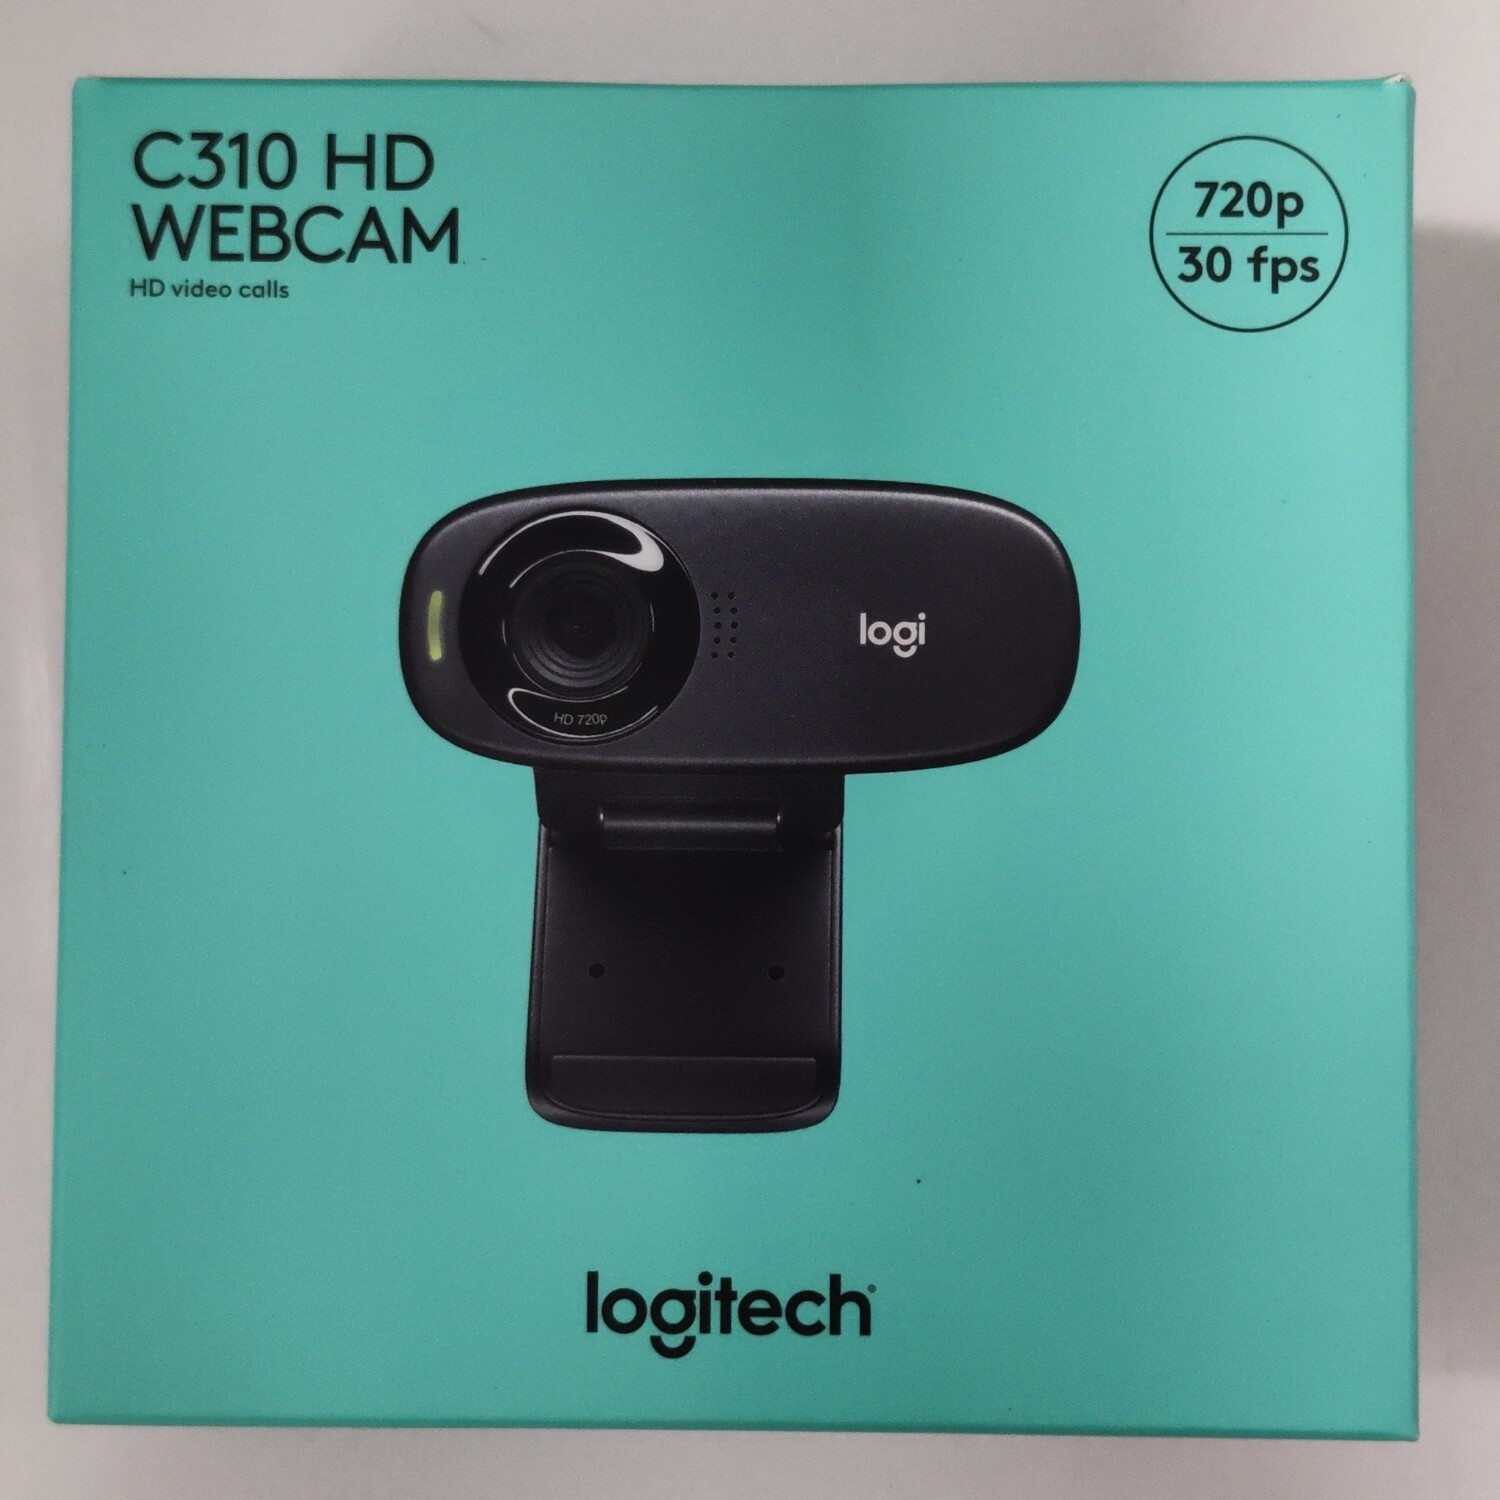 Logitech C310 HD Webcam, 720p/30fps